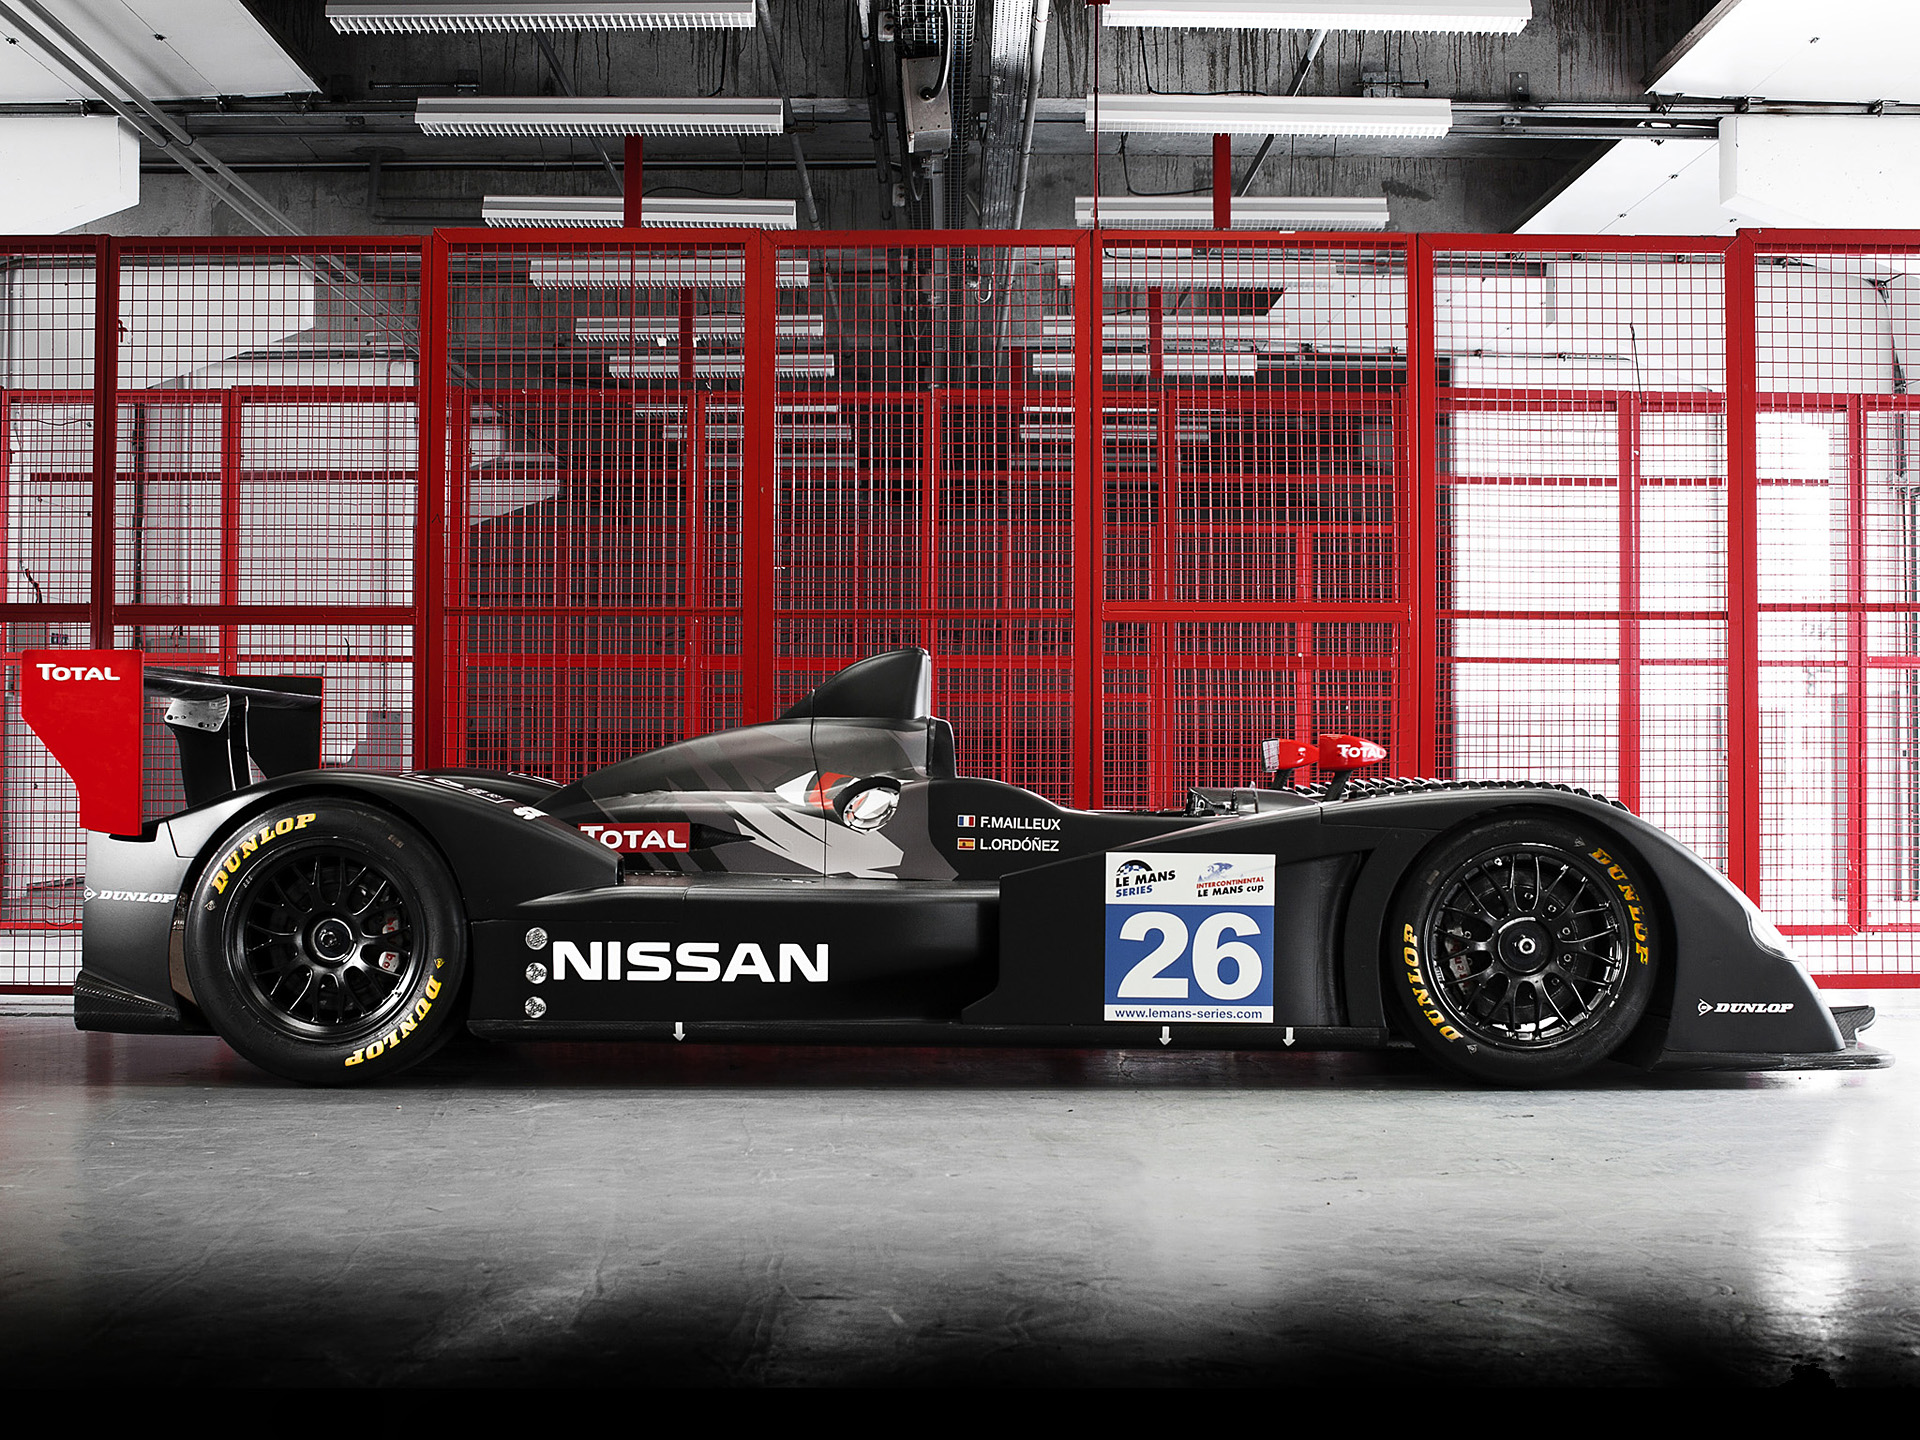  2011 Nissan Signature Racing LMP2 Wallpaper.